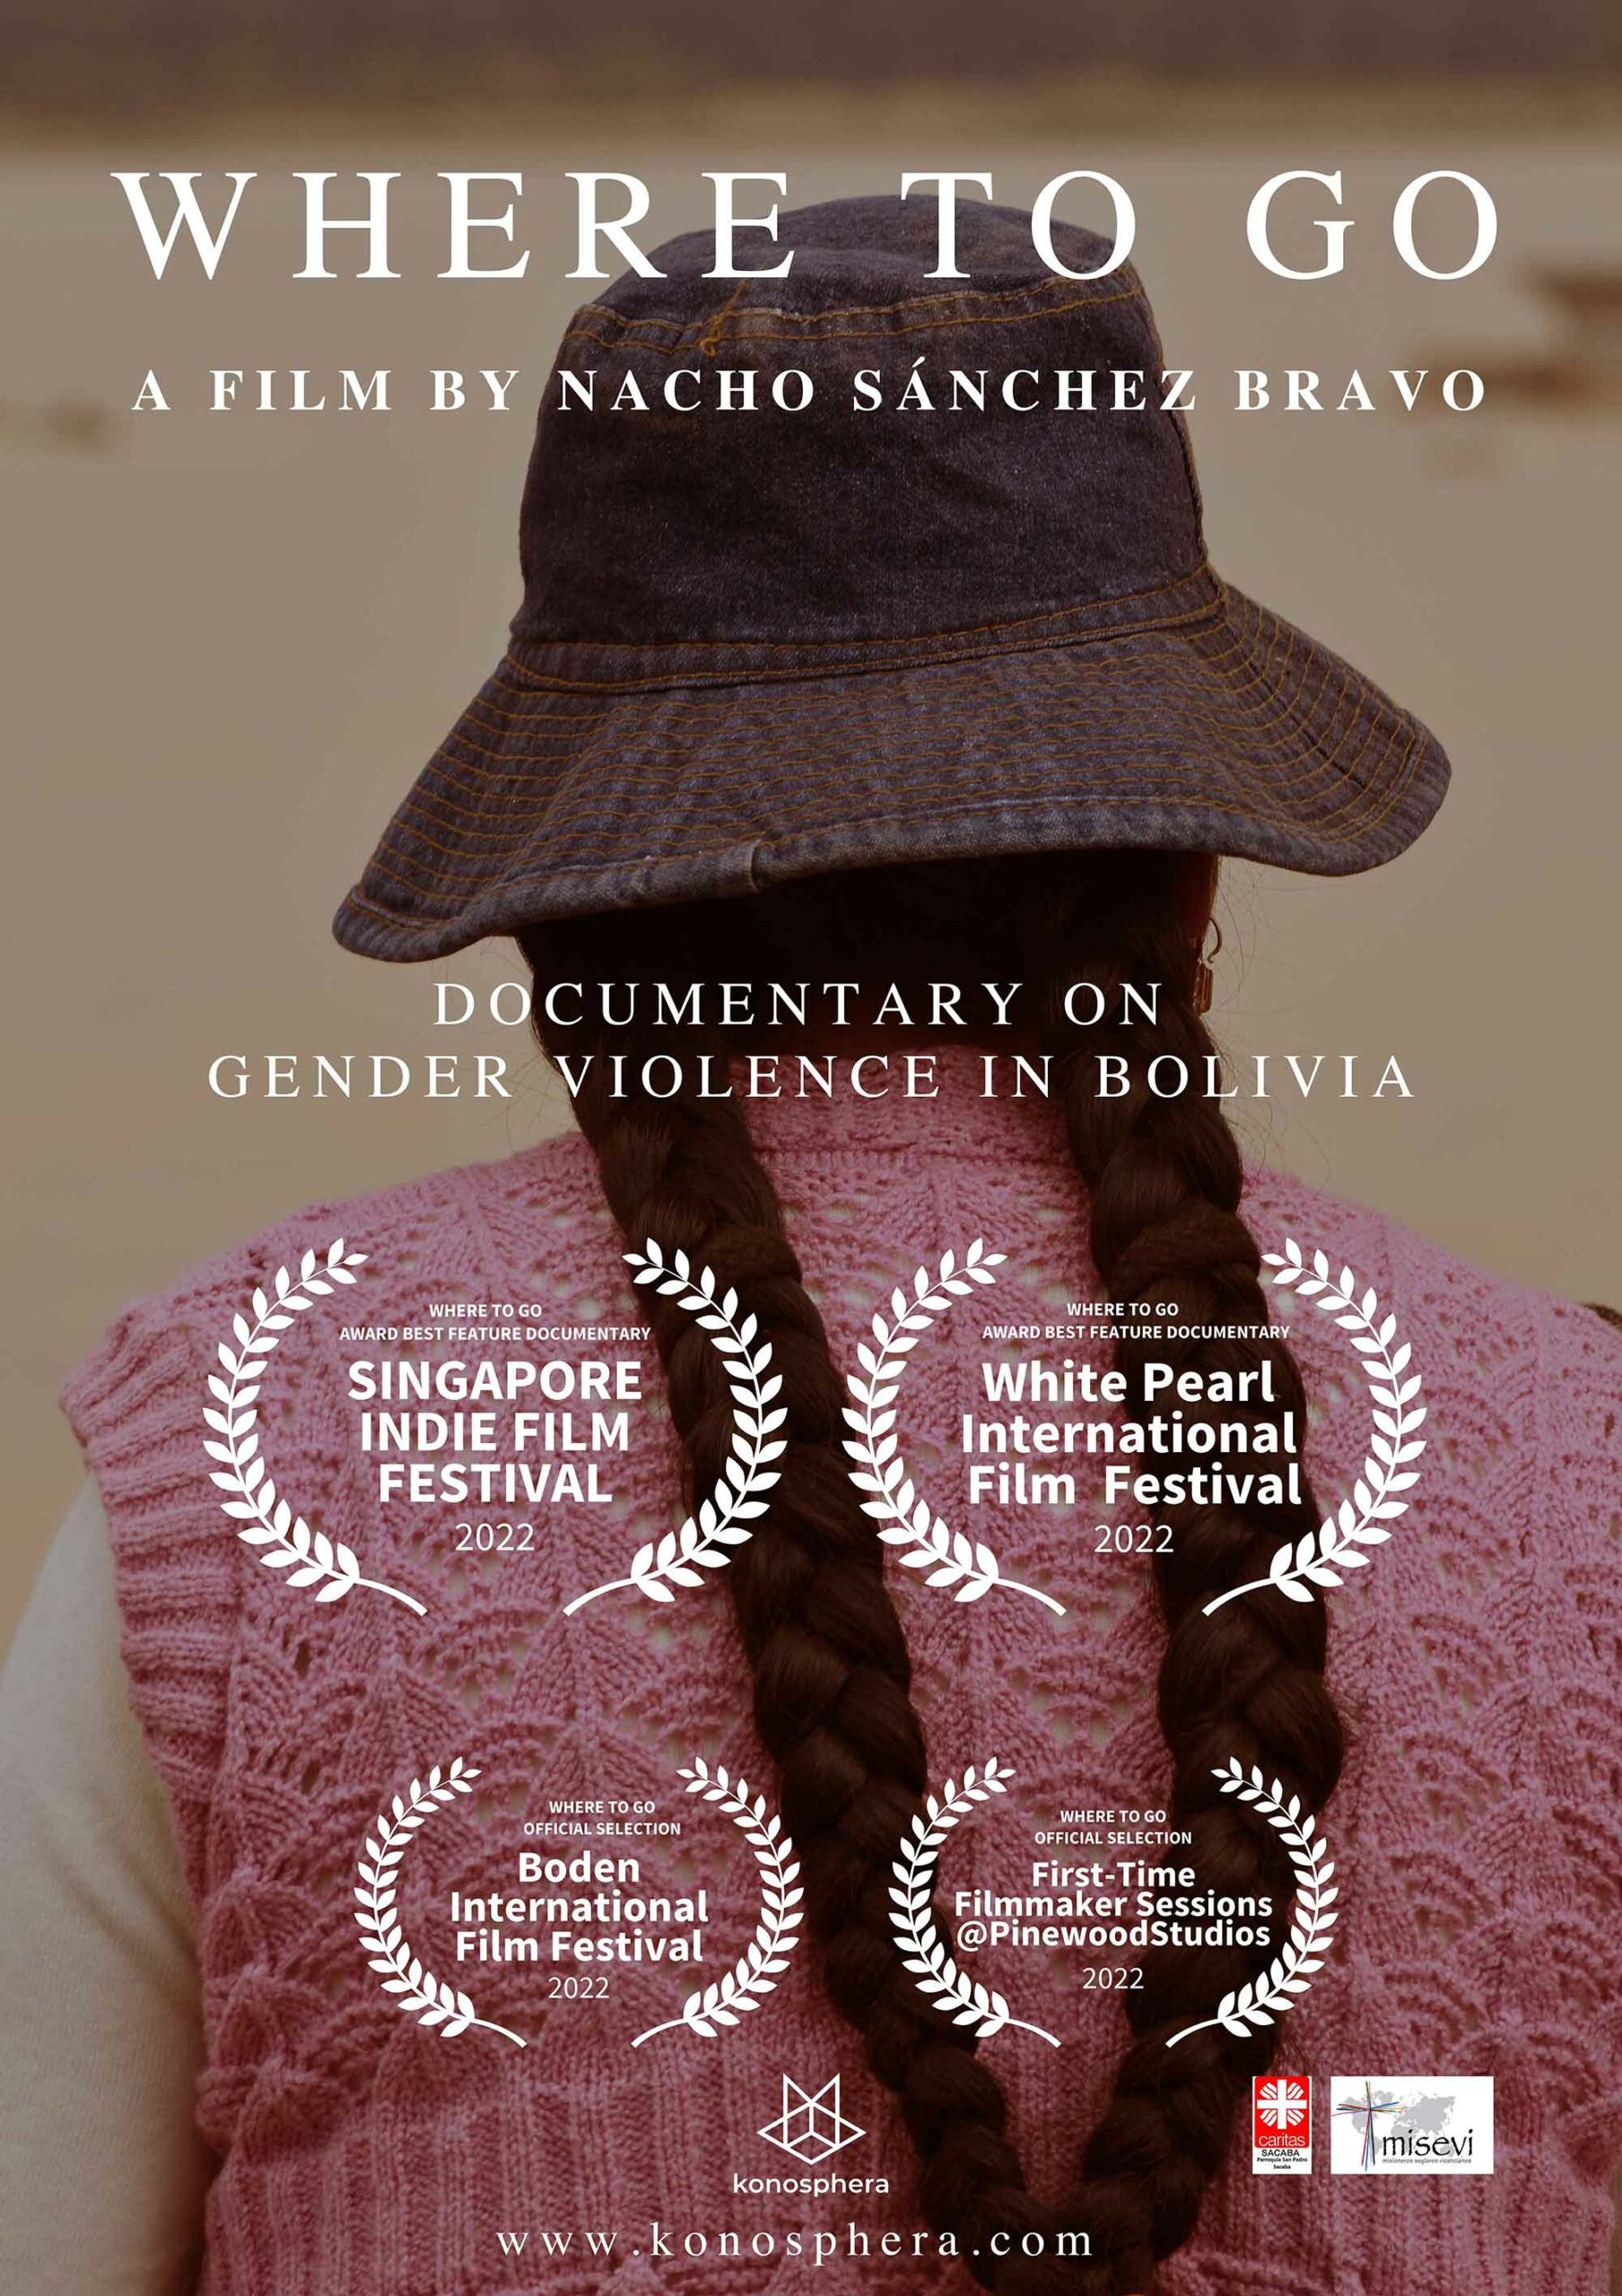 «A Dónde ir” de Nacho Sánchez Bravo presente en la selección oficial del Golden FEMI Film Festival de Sofia